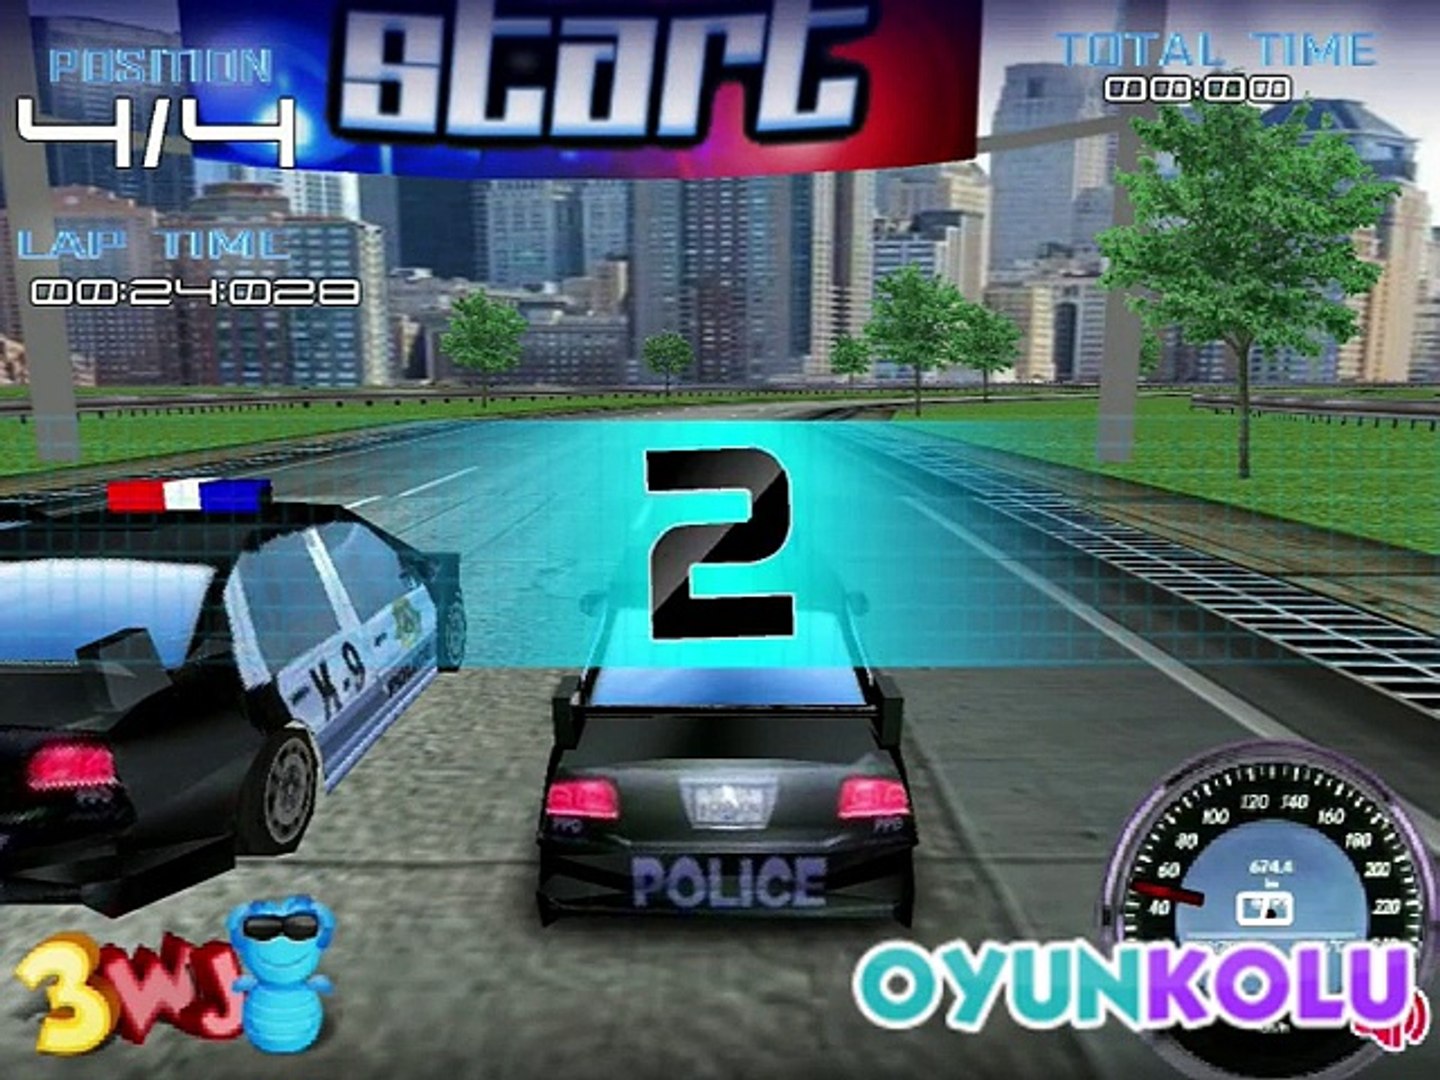 Yeni Polis Arabaları Oyunu Nasıl Oynanır - Dailymotion Video